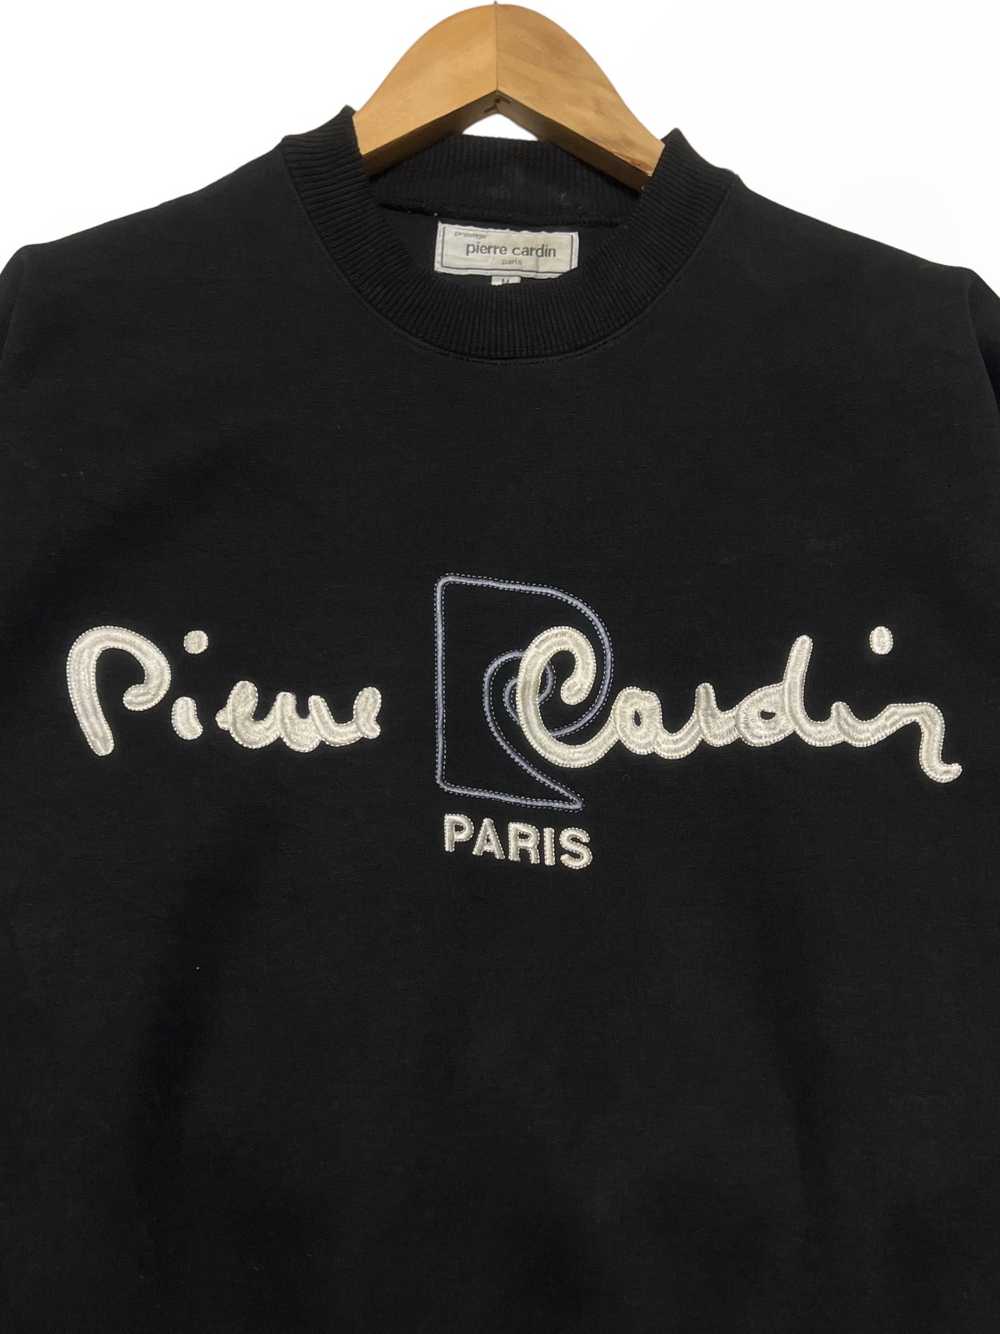 Pierre Cardin - VTG 90s PIERRE CARDIN PARIS EMBRO… - image 1